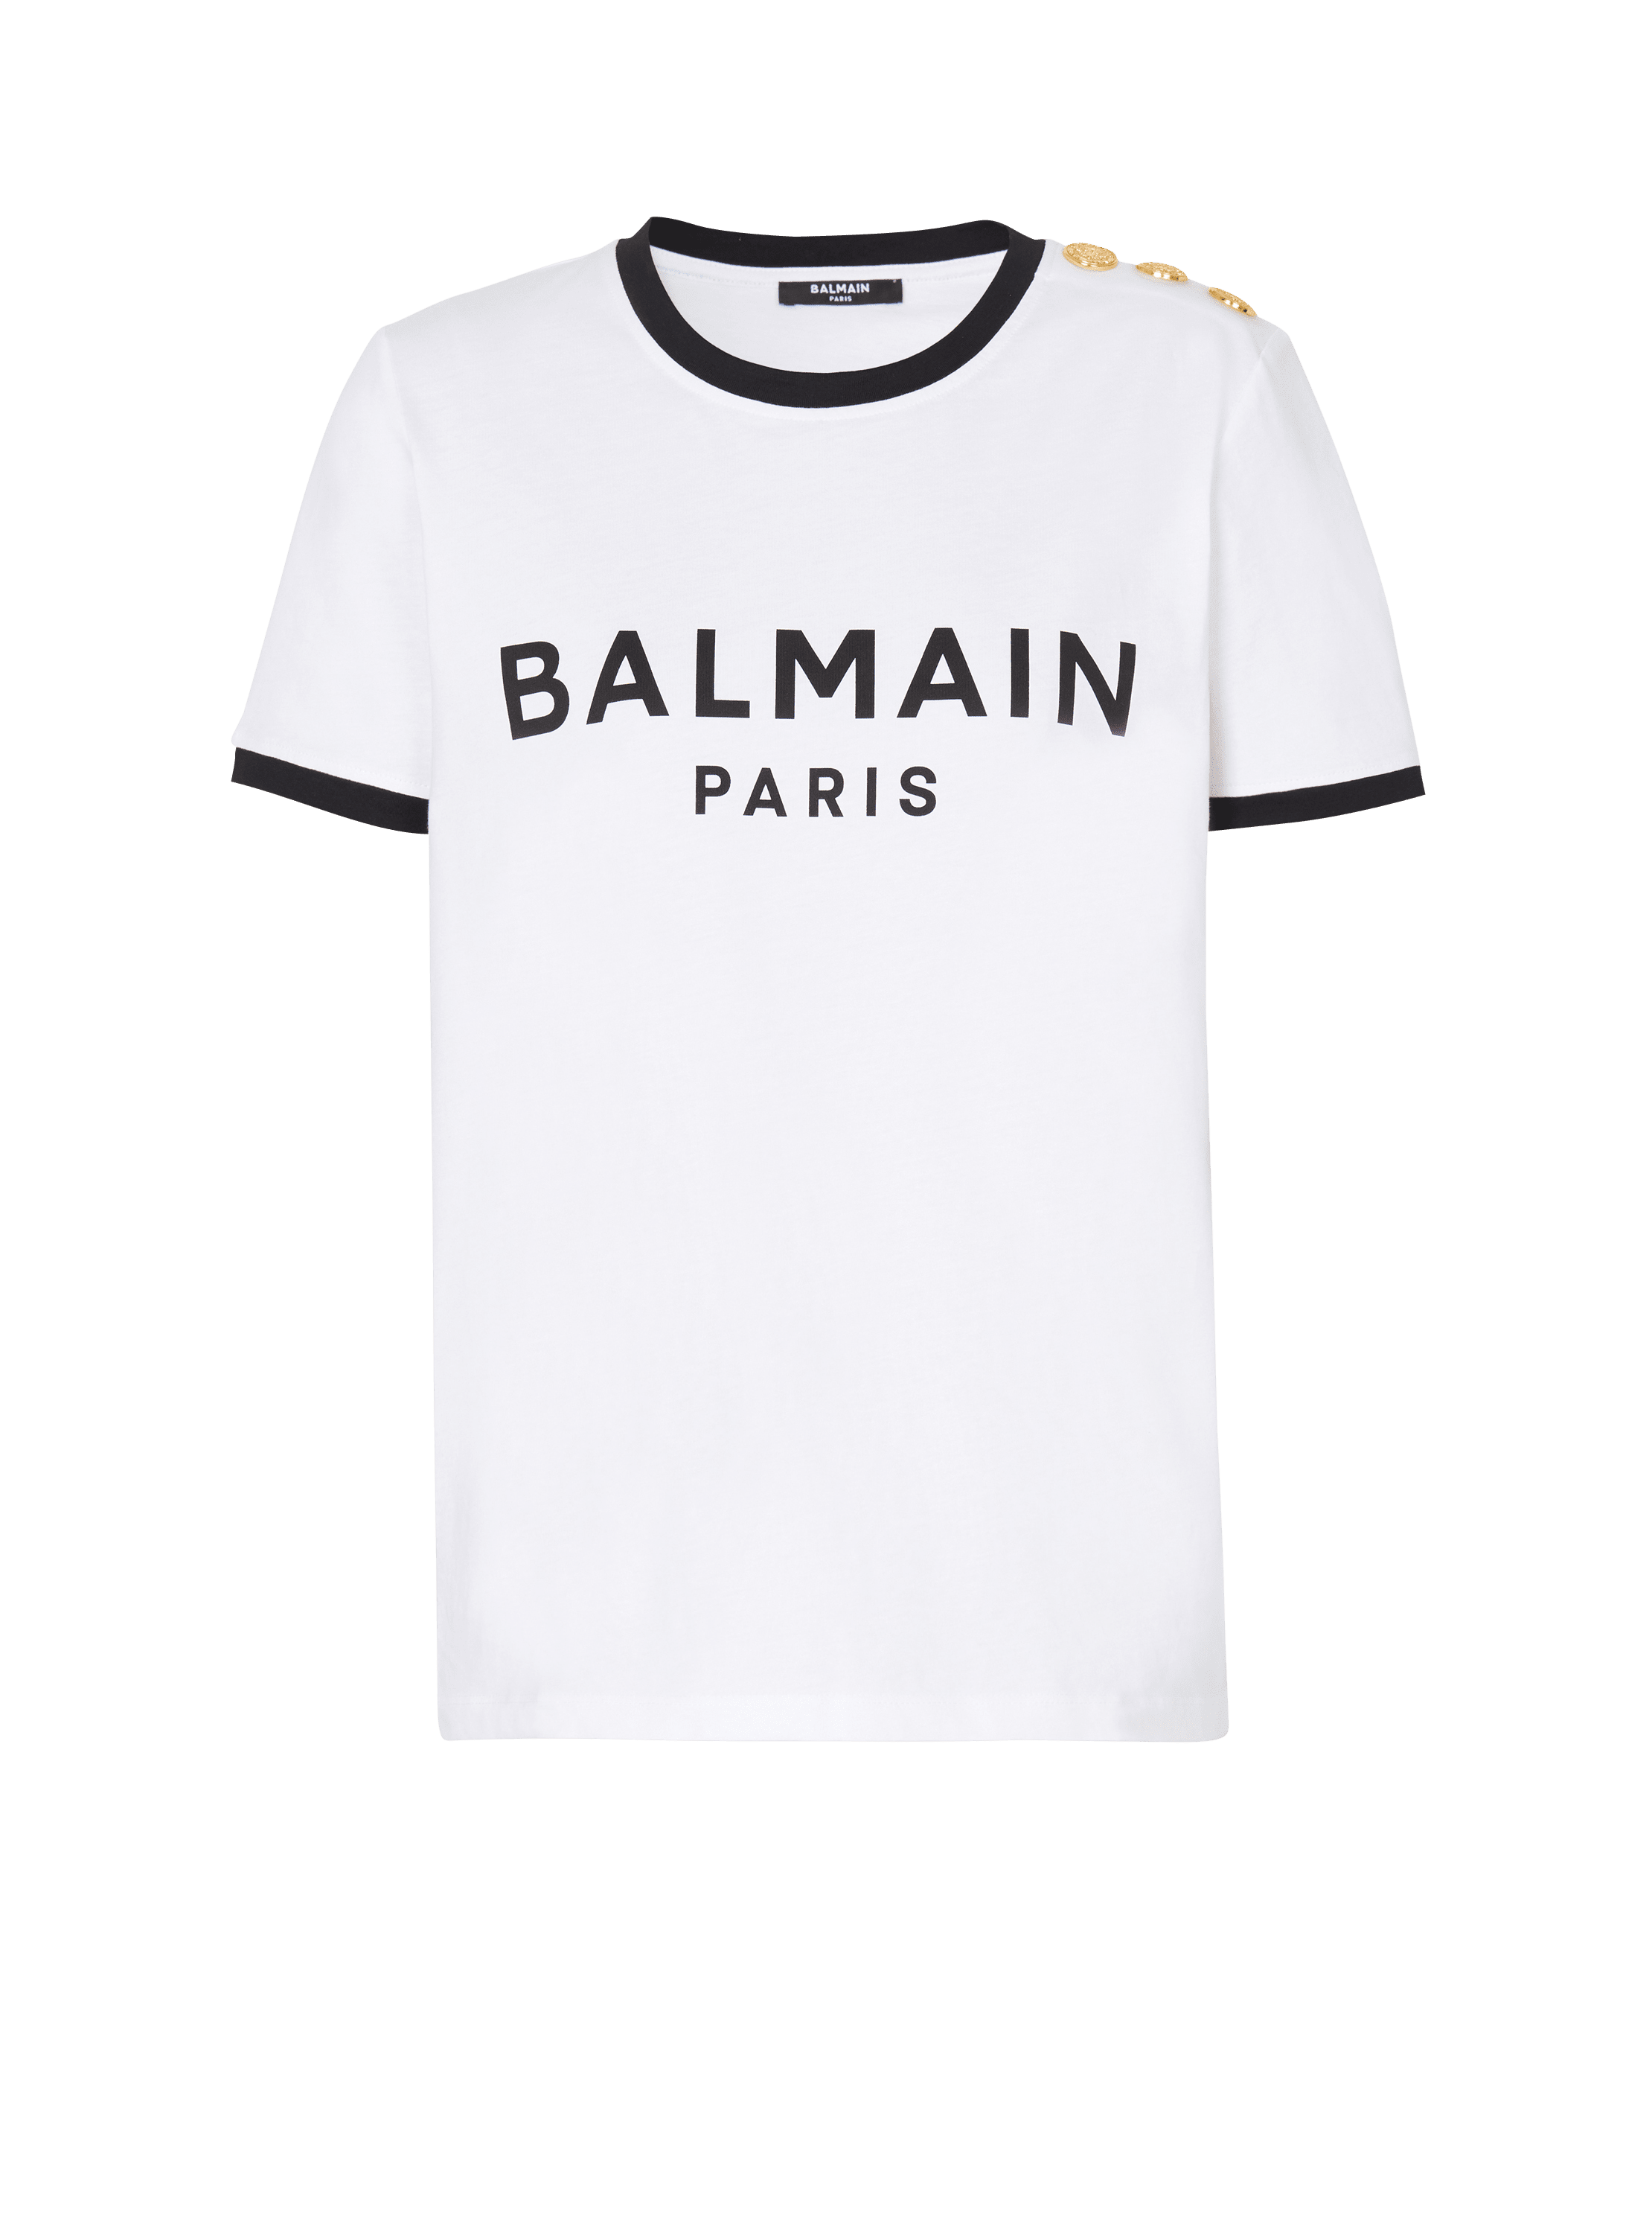 7,480円BALMAIN Tシャツ